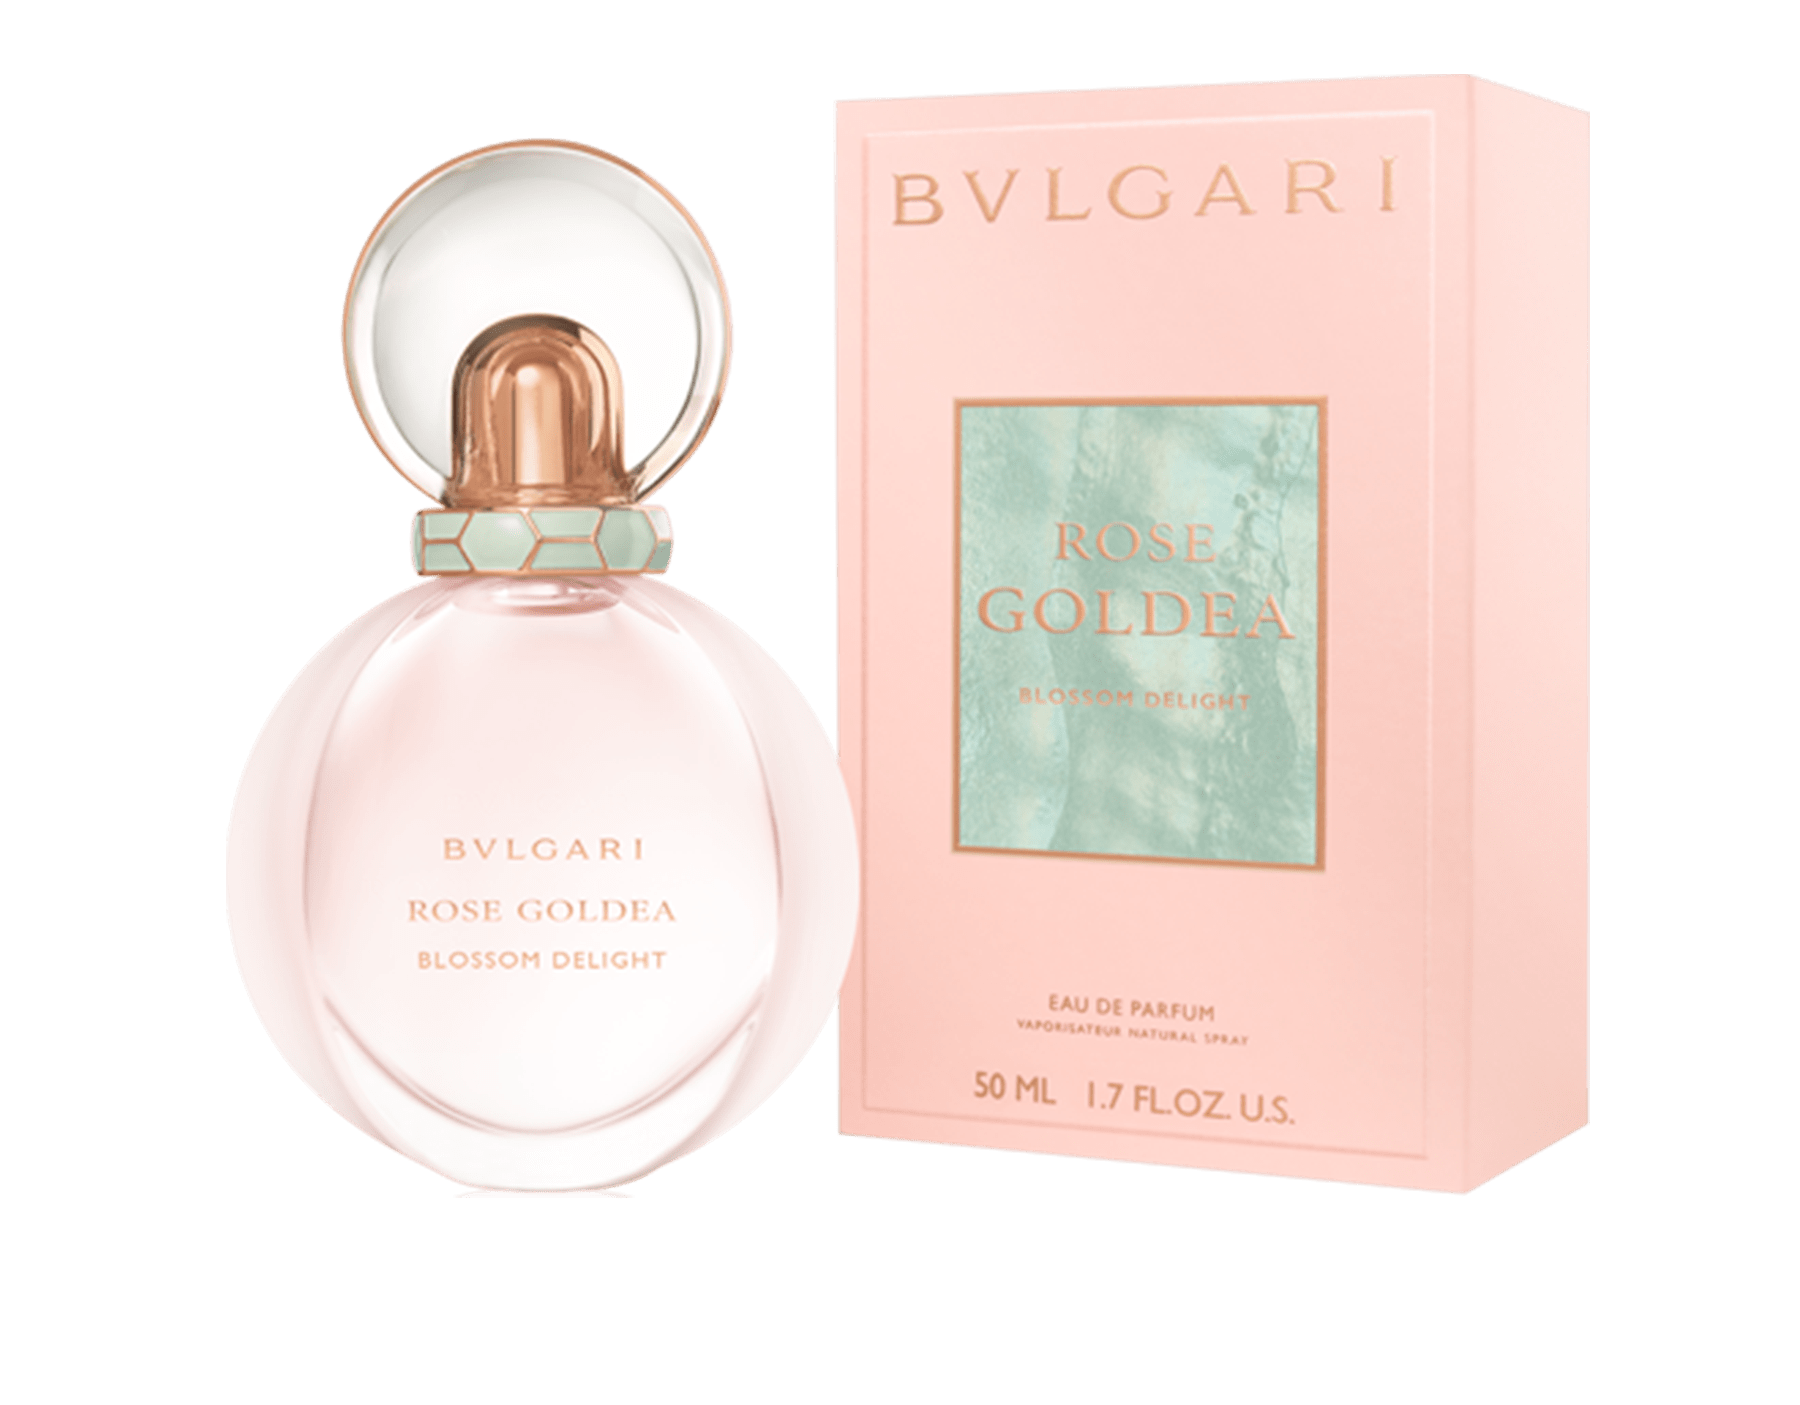 bvlgari parfum rose goldea